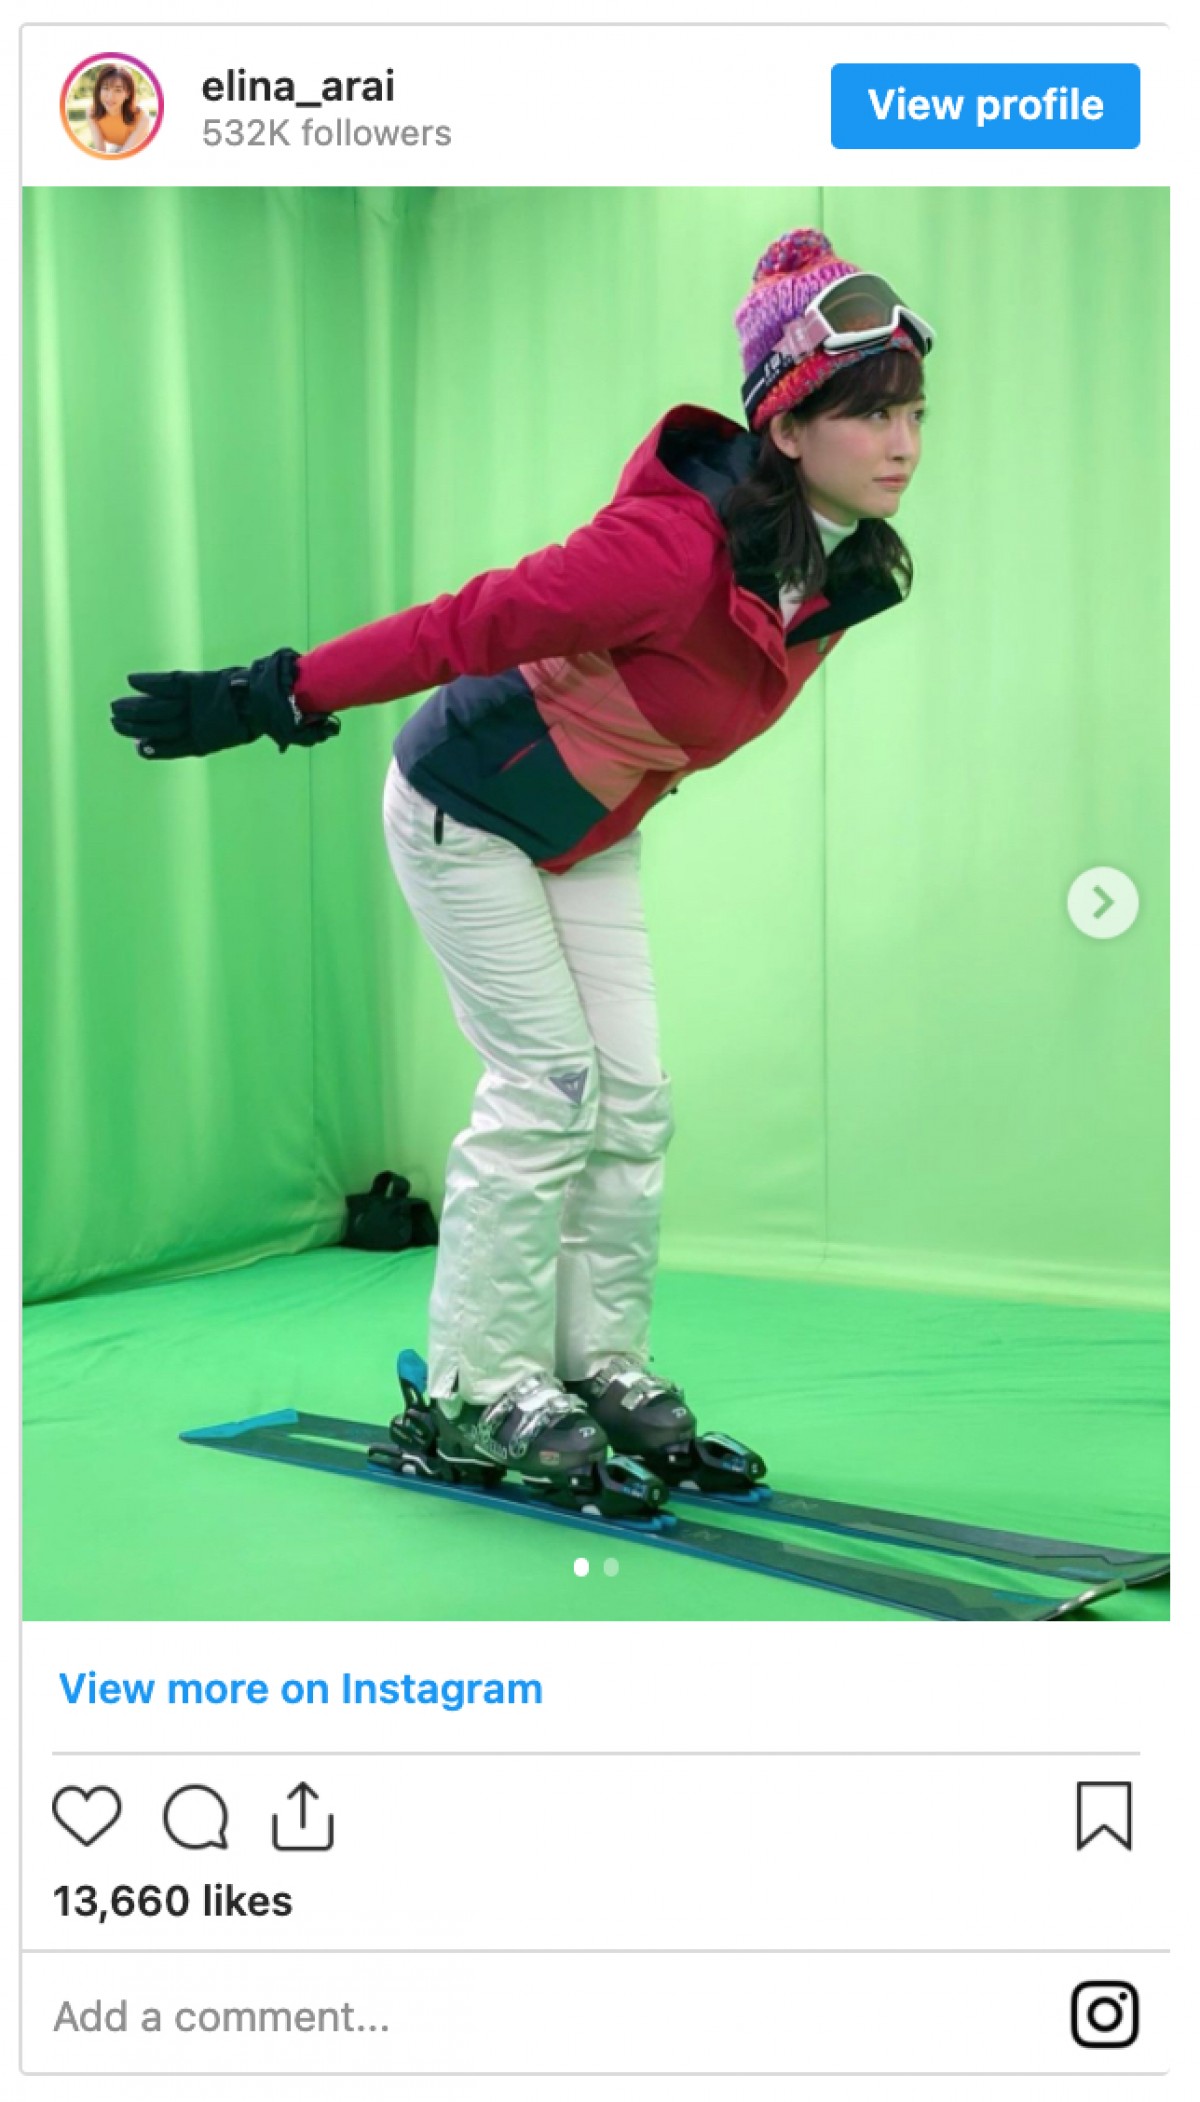 新井恵理那、スキージャンプ選手なりきりショット　りりしい表情も「ペンギンみたいでかわいい」の声